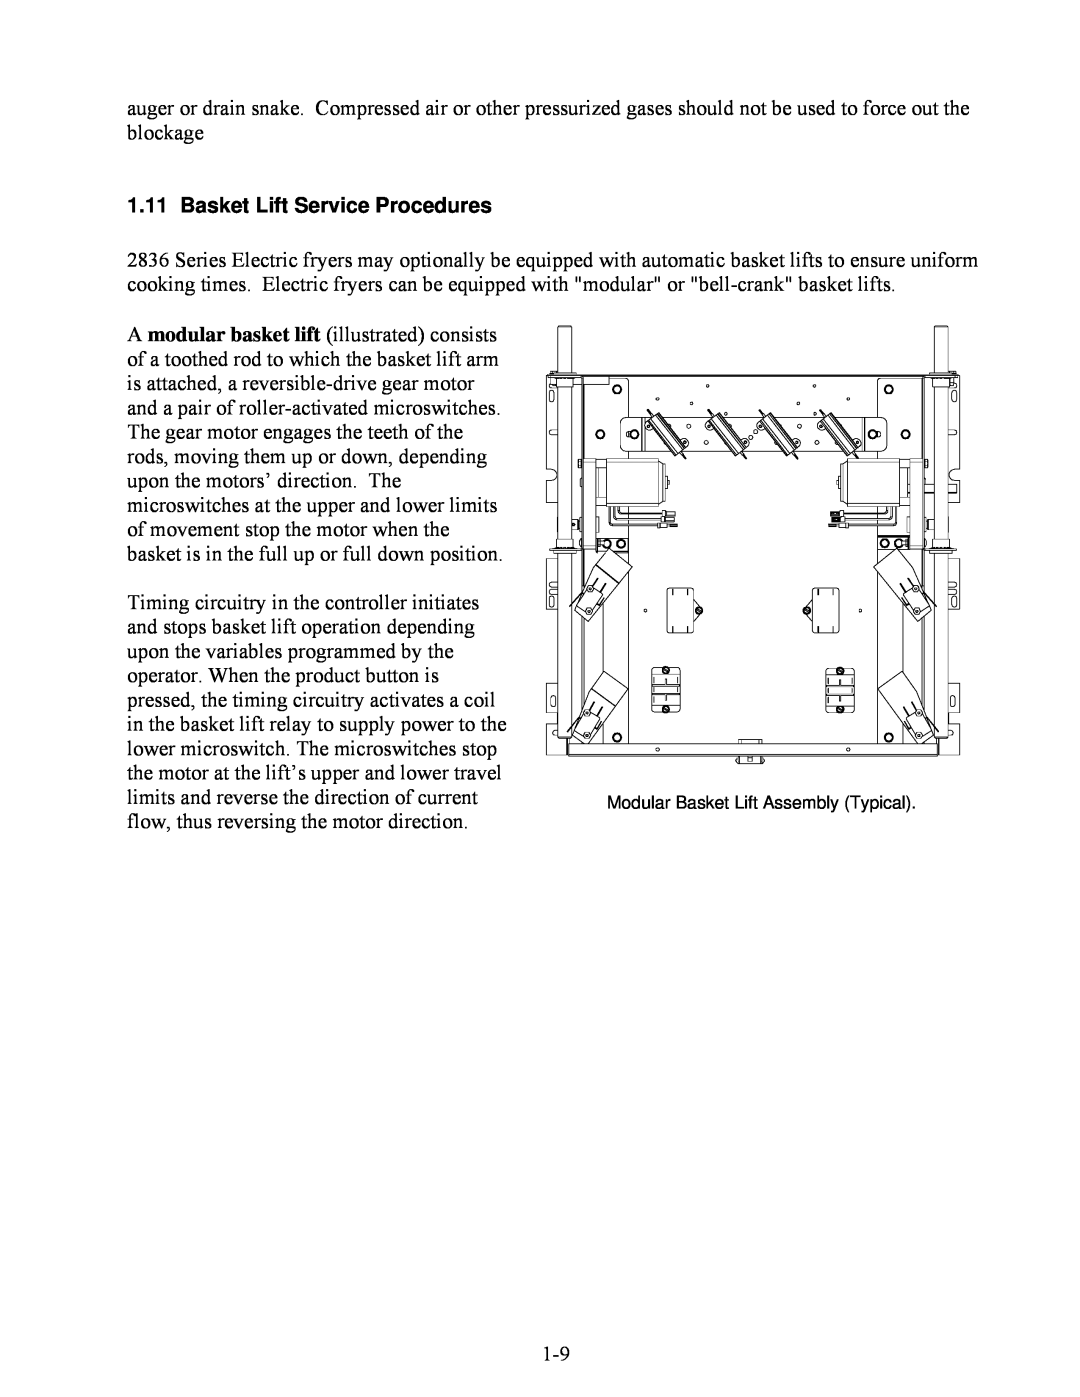 Frymaster 2836 manual Basket Lift Service Procedures 